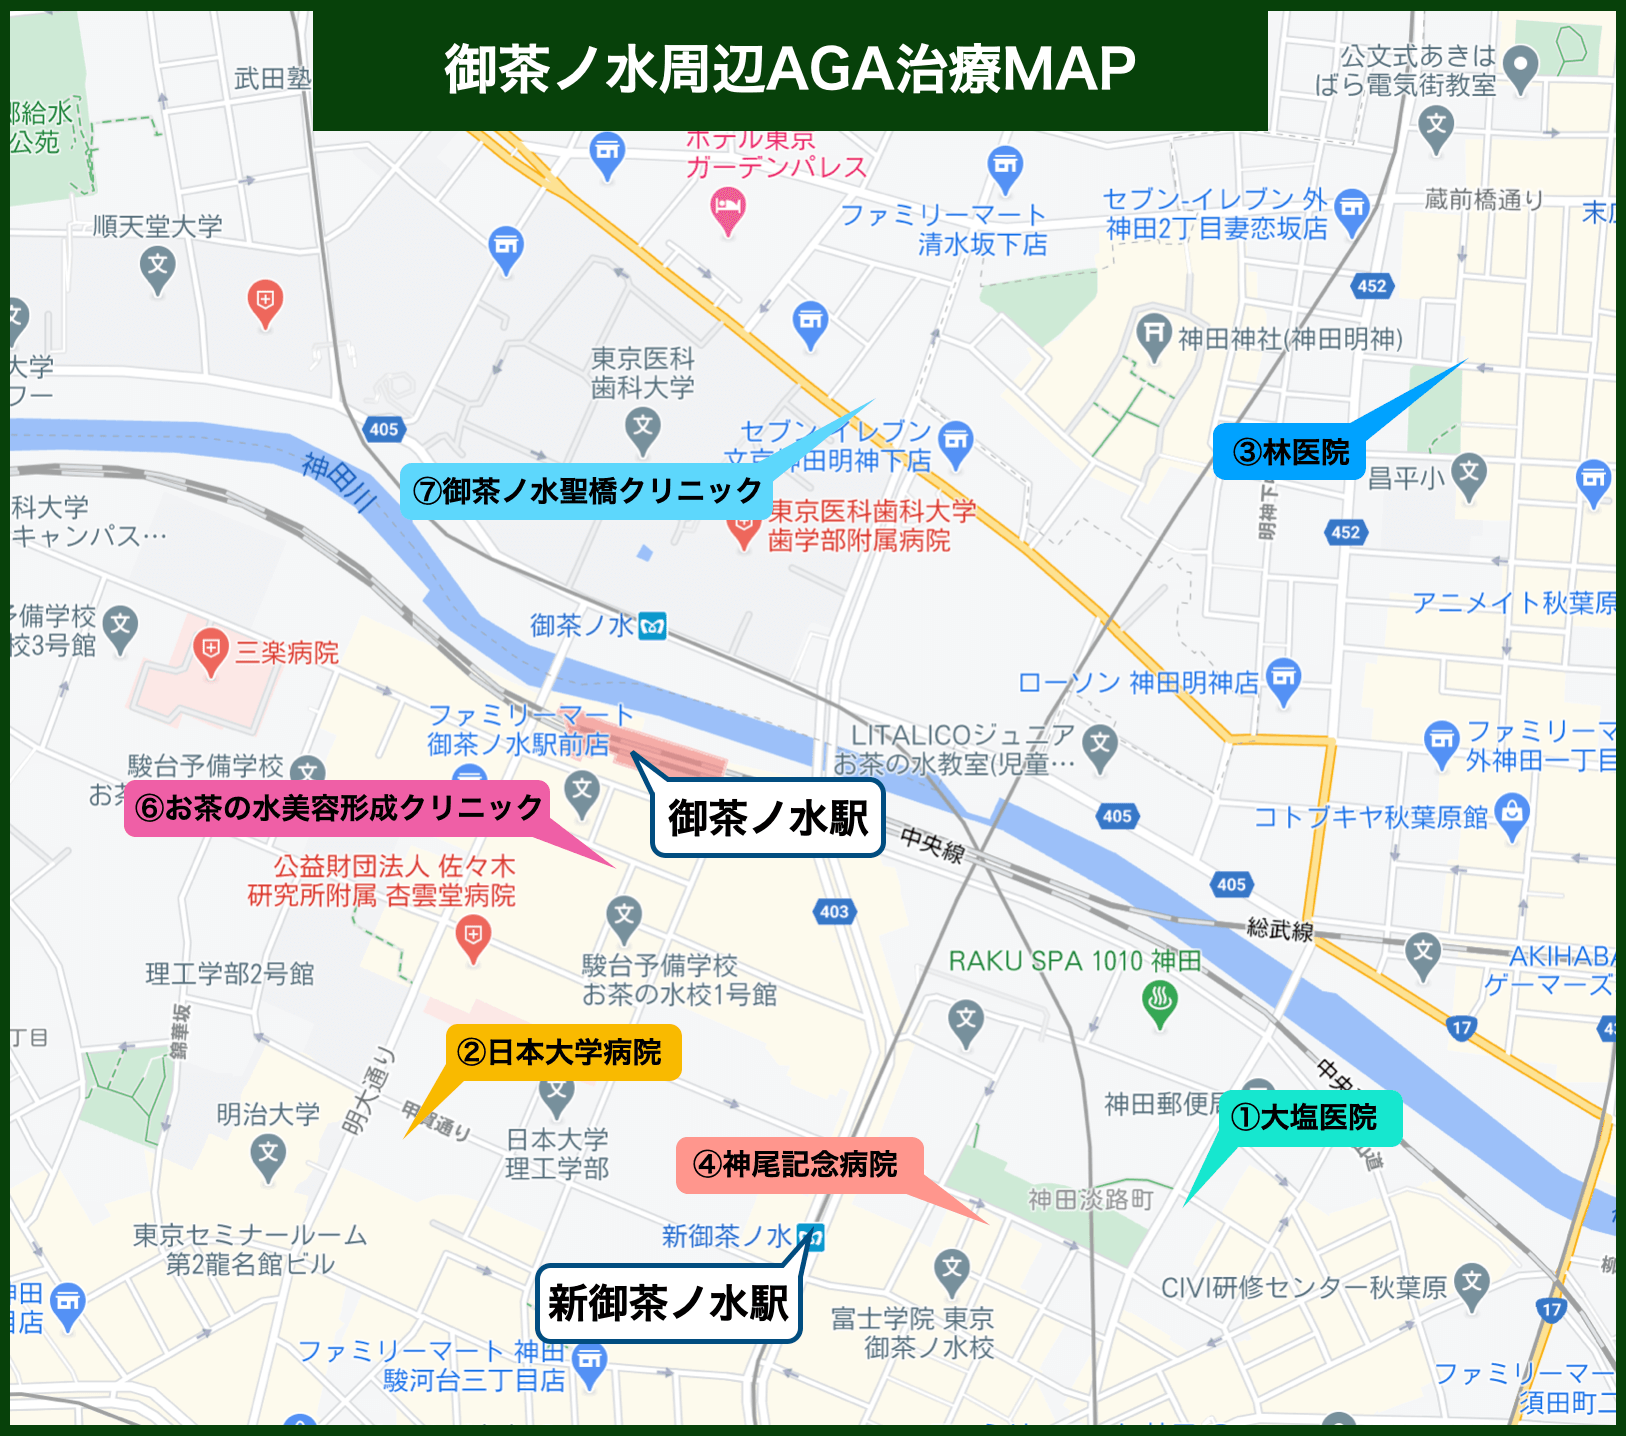 御茶ノ水周辺AGA治療MAP